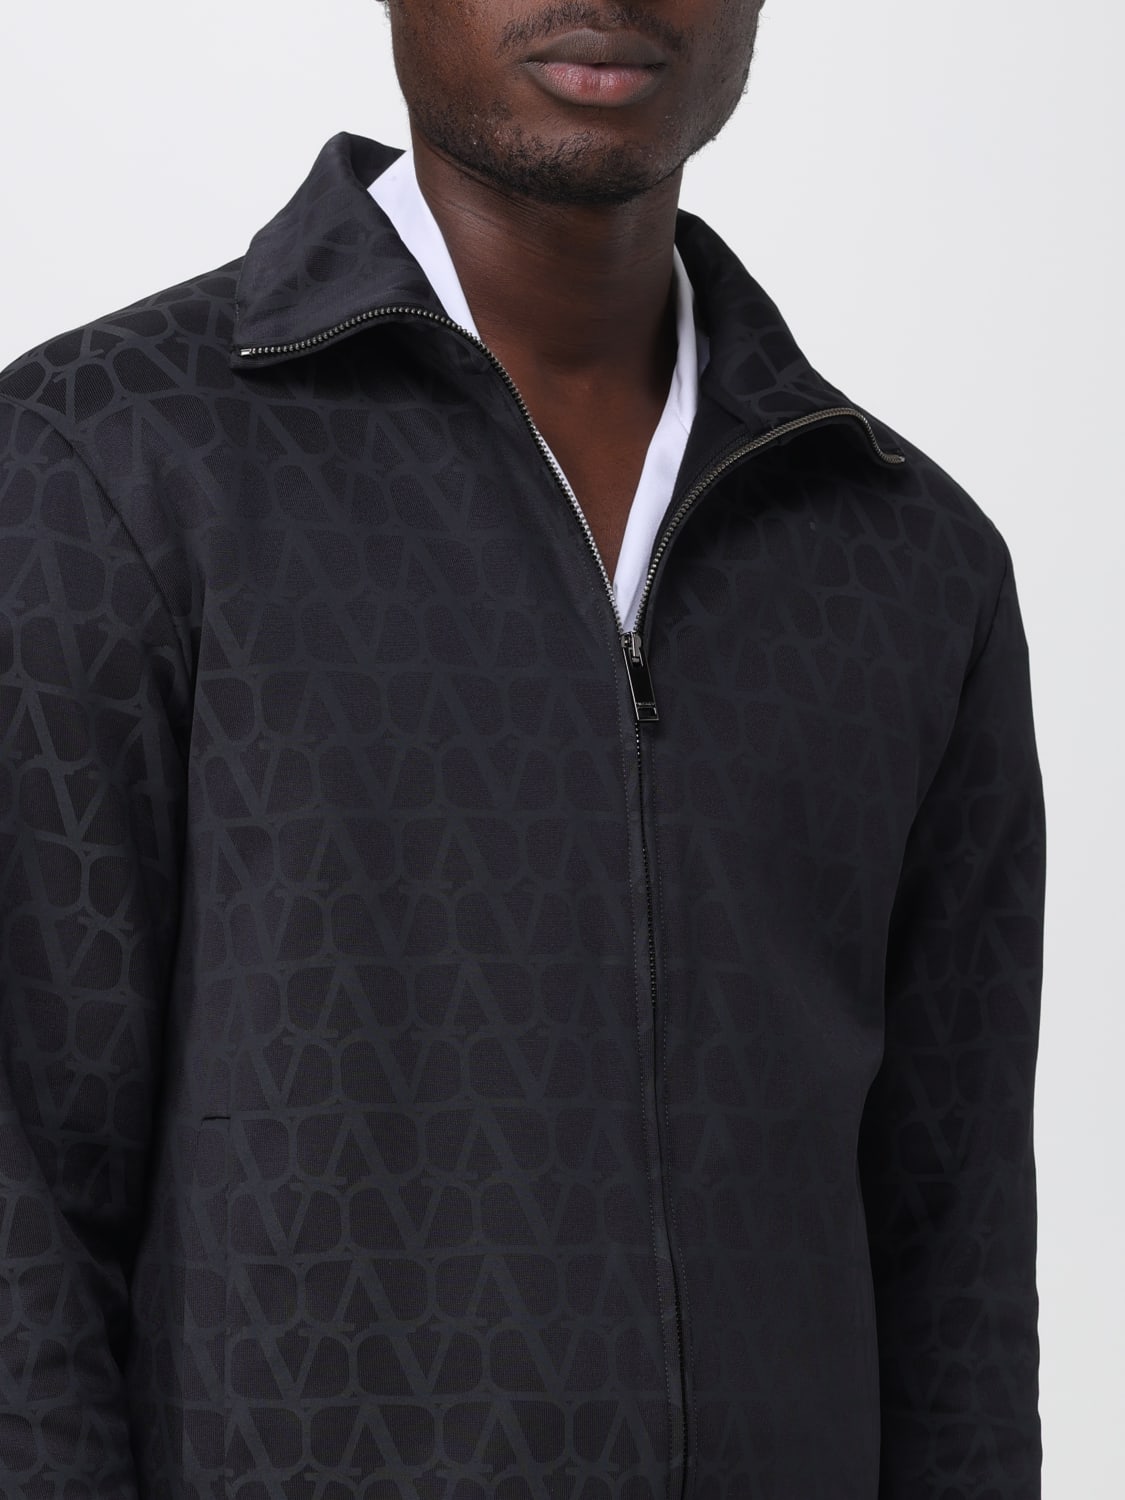 Cotton Louis Vuitton Knitwear & Sweatshirts for Men - Vestiaire